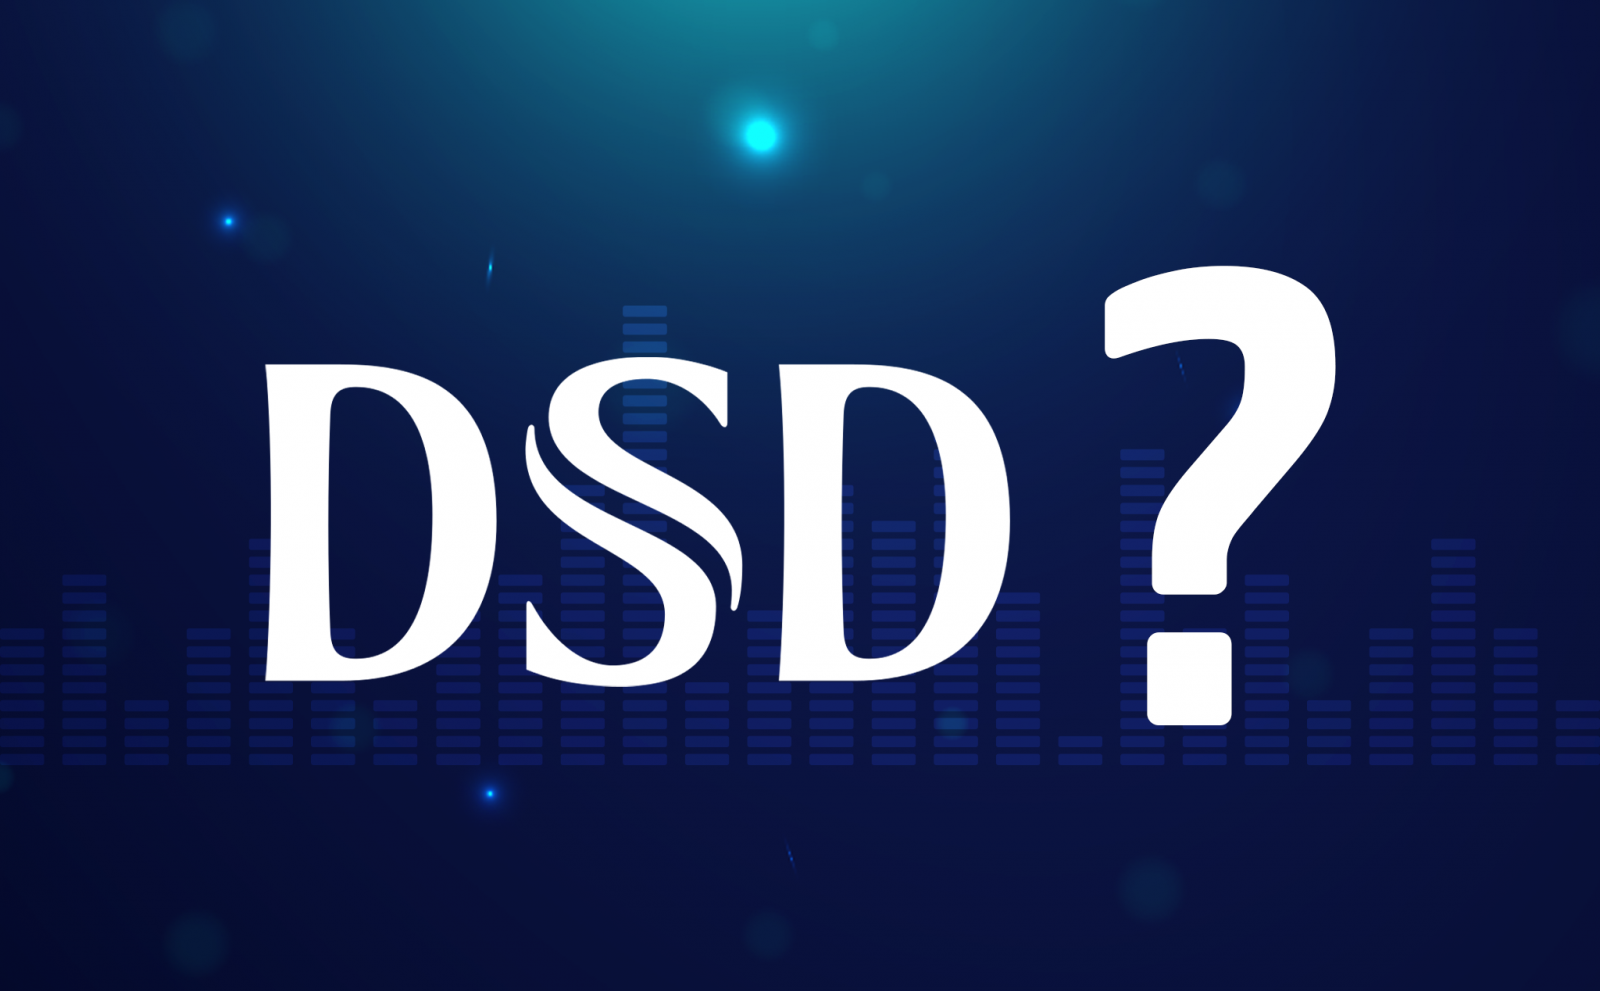 Nhạc DSD là gì?